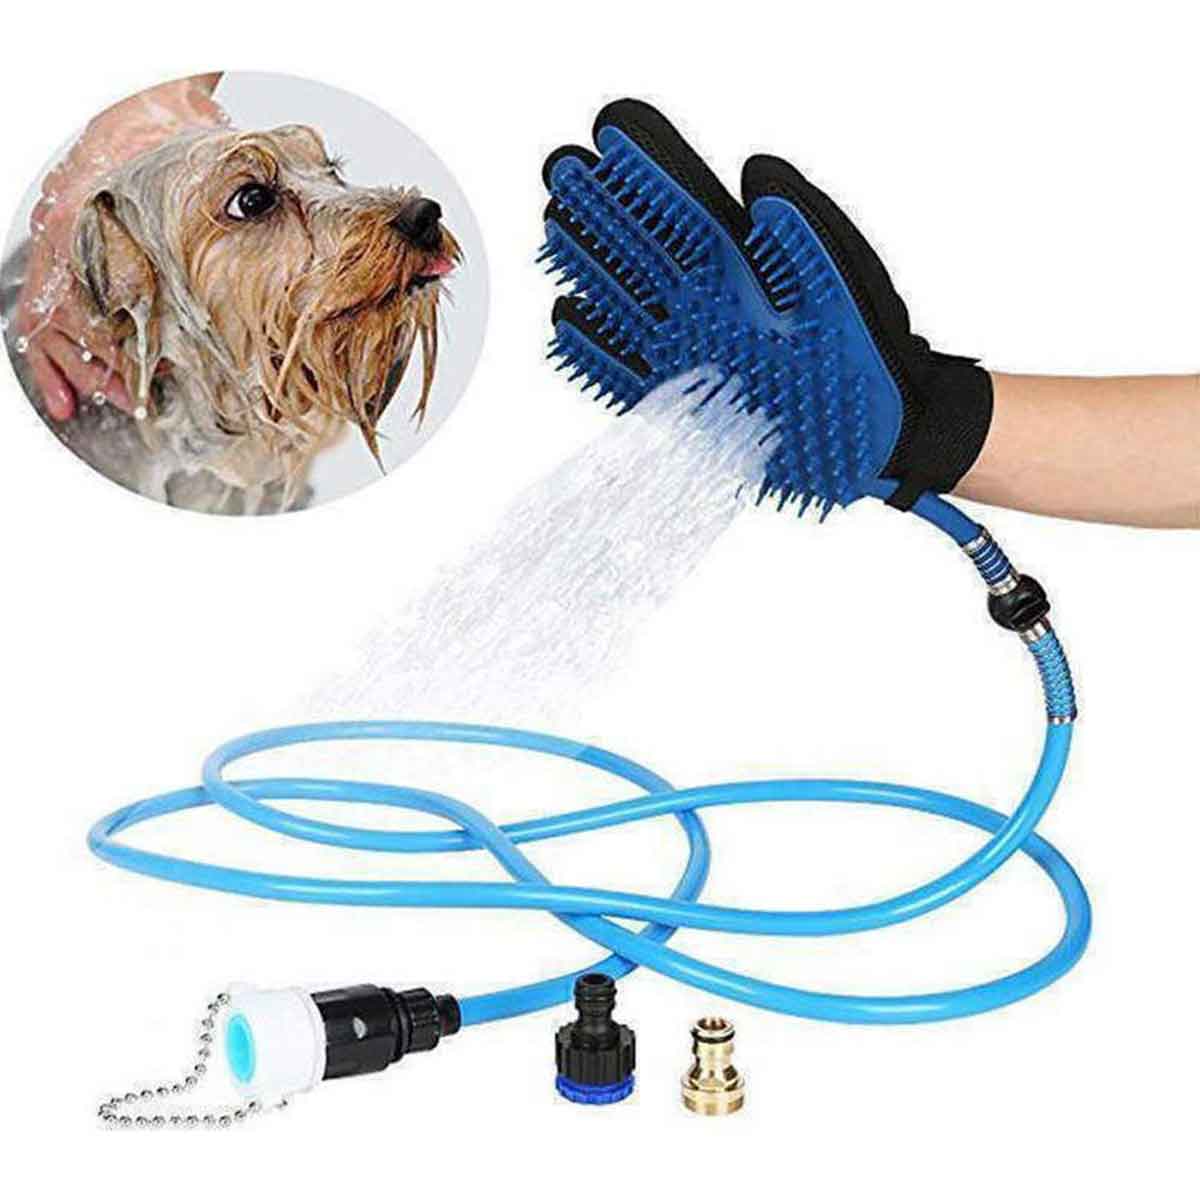 Γάντι για Καθαρισμό Τριχώματος Σκύλου με Σύνδεση για Βρύση BD-190 Μπλε